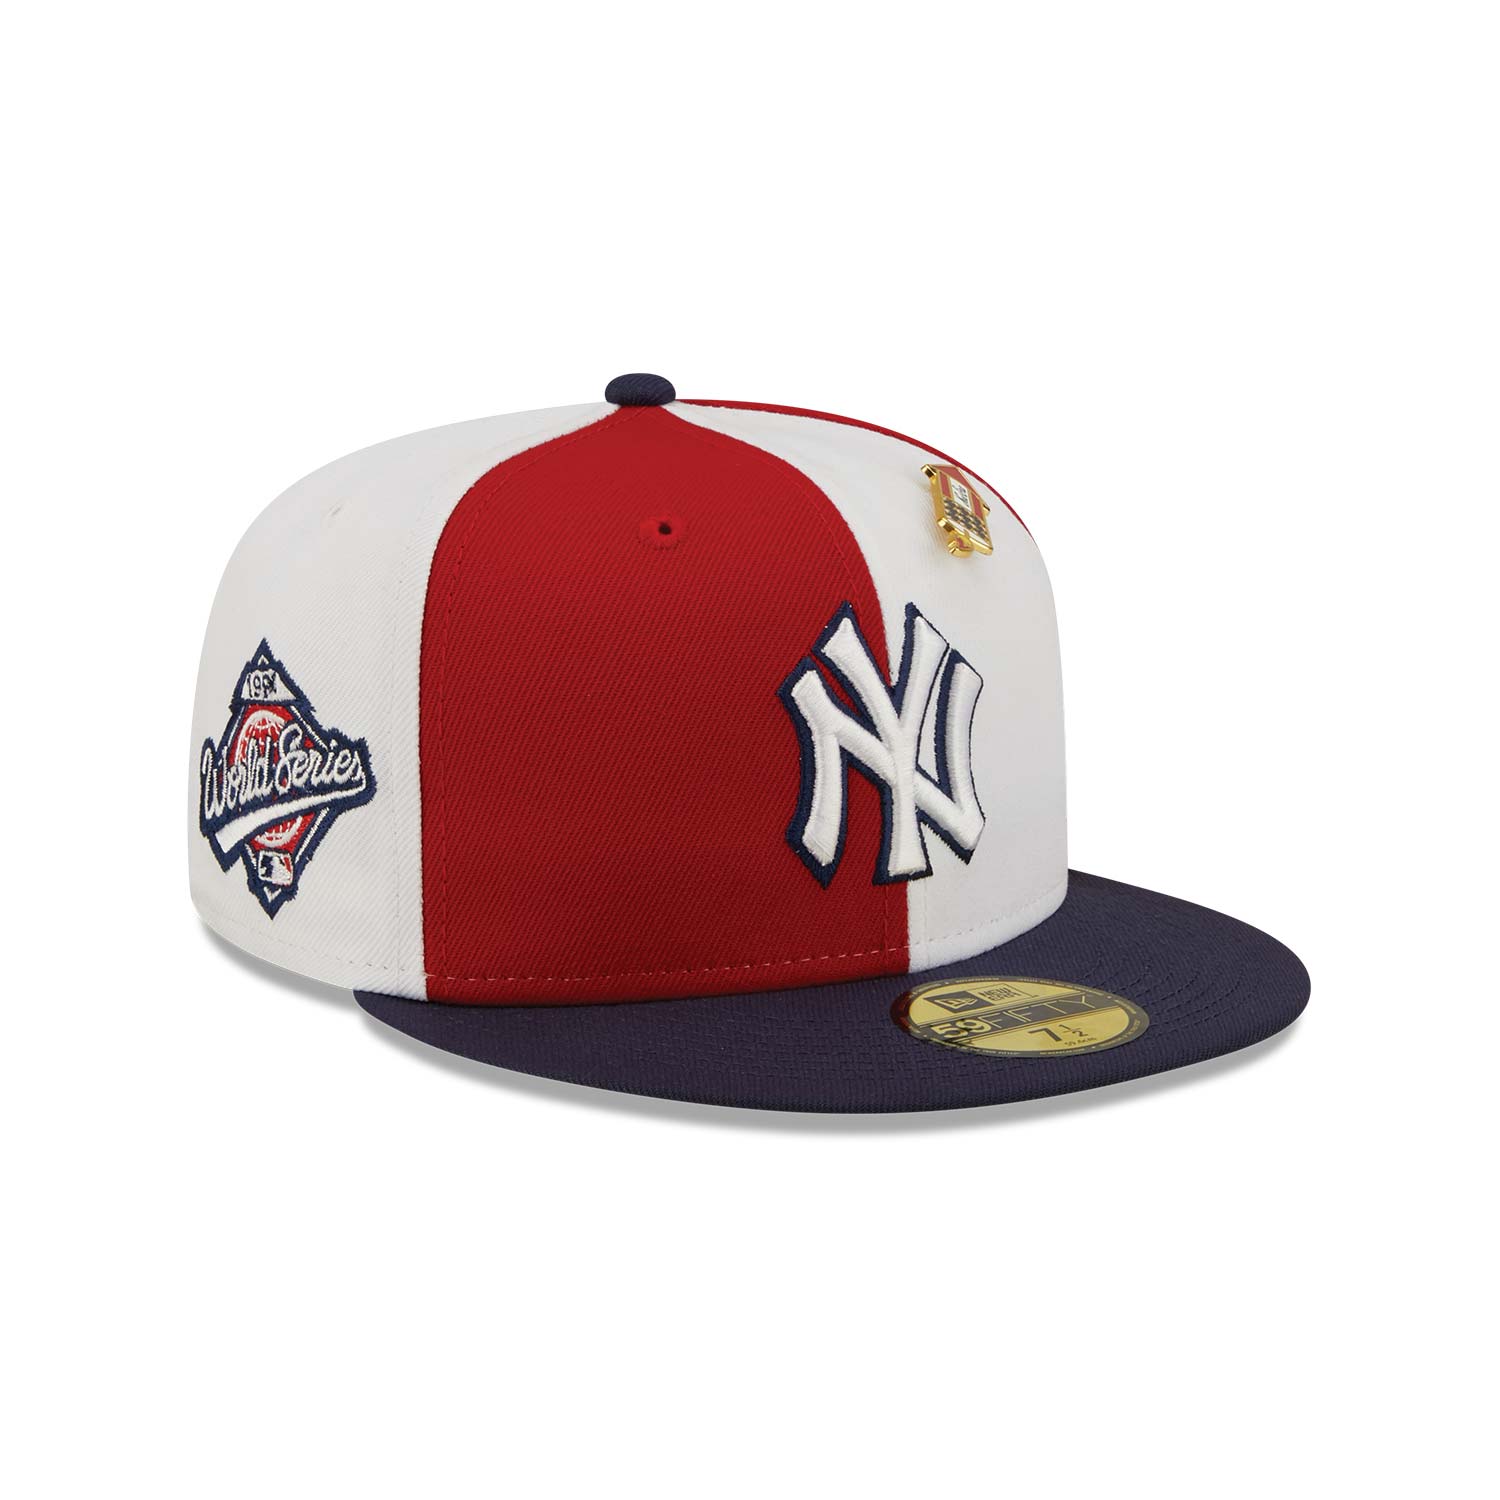 Red NY Caps & Hats | Red Yankees Caps & Hats | New Era Cap HU